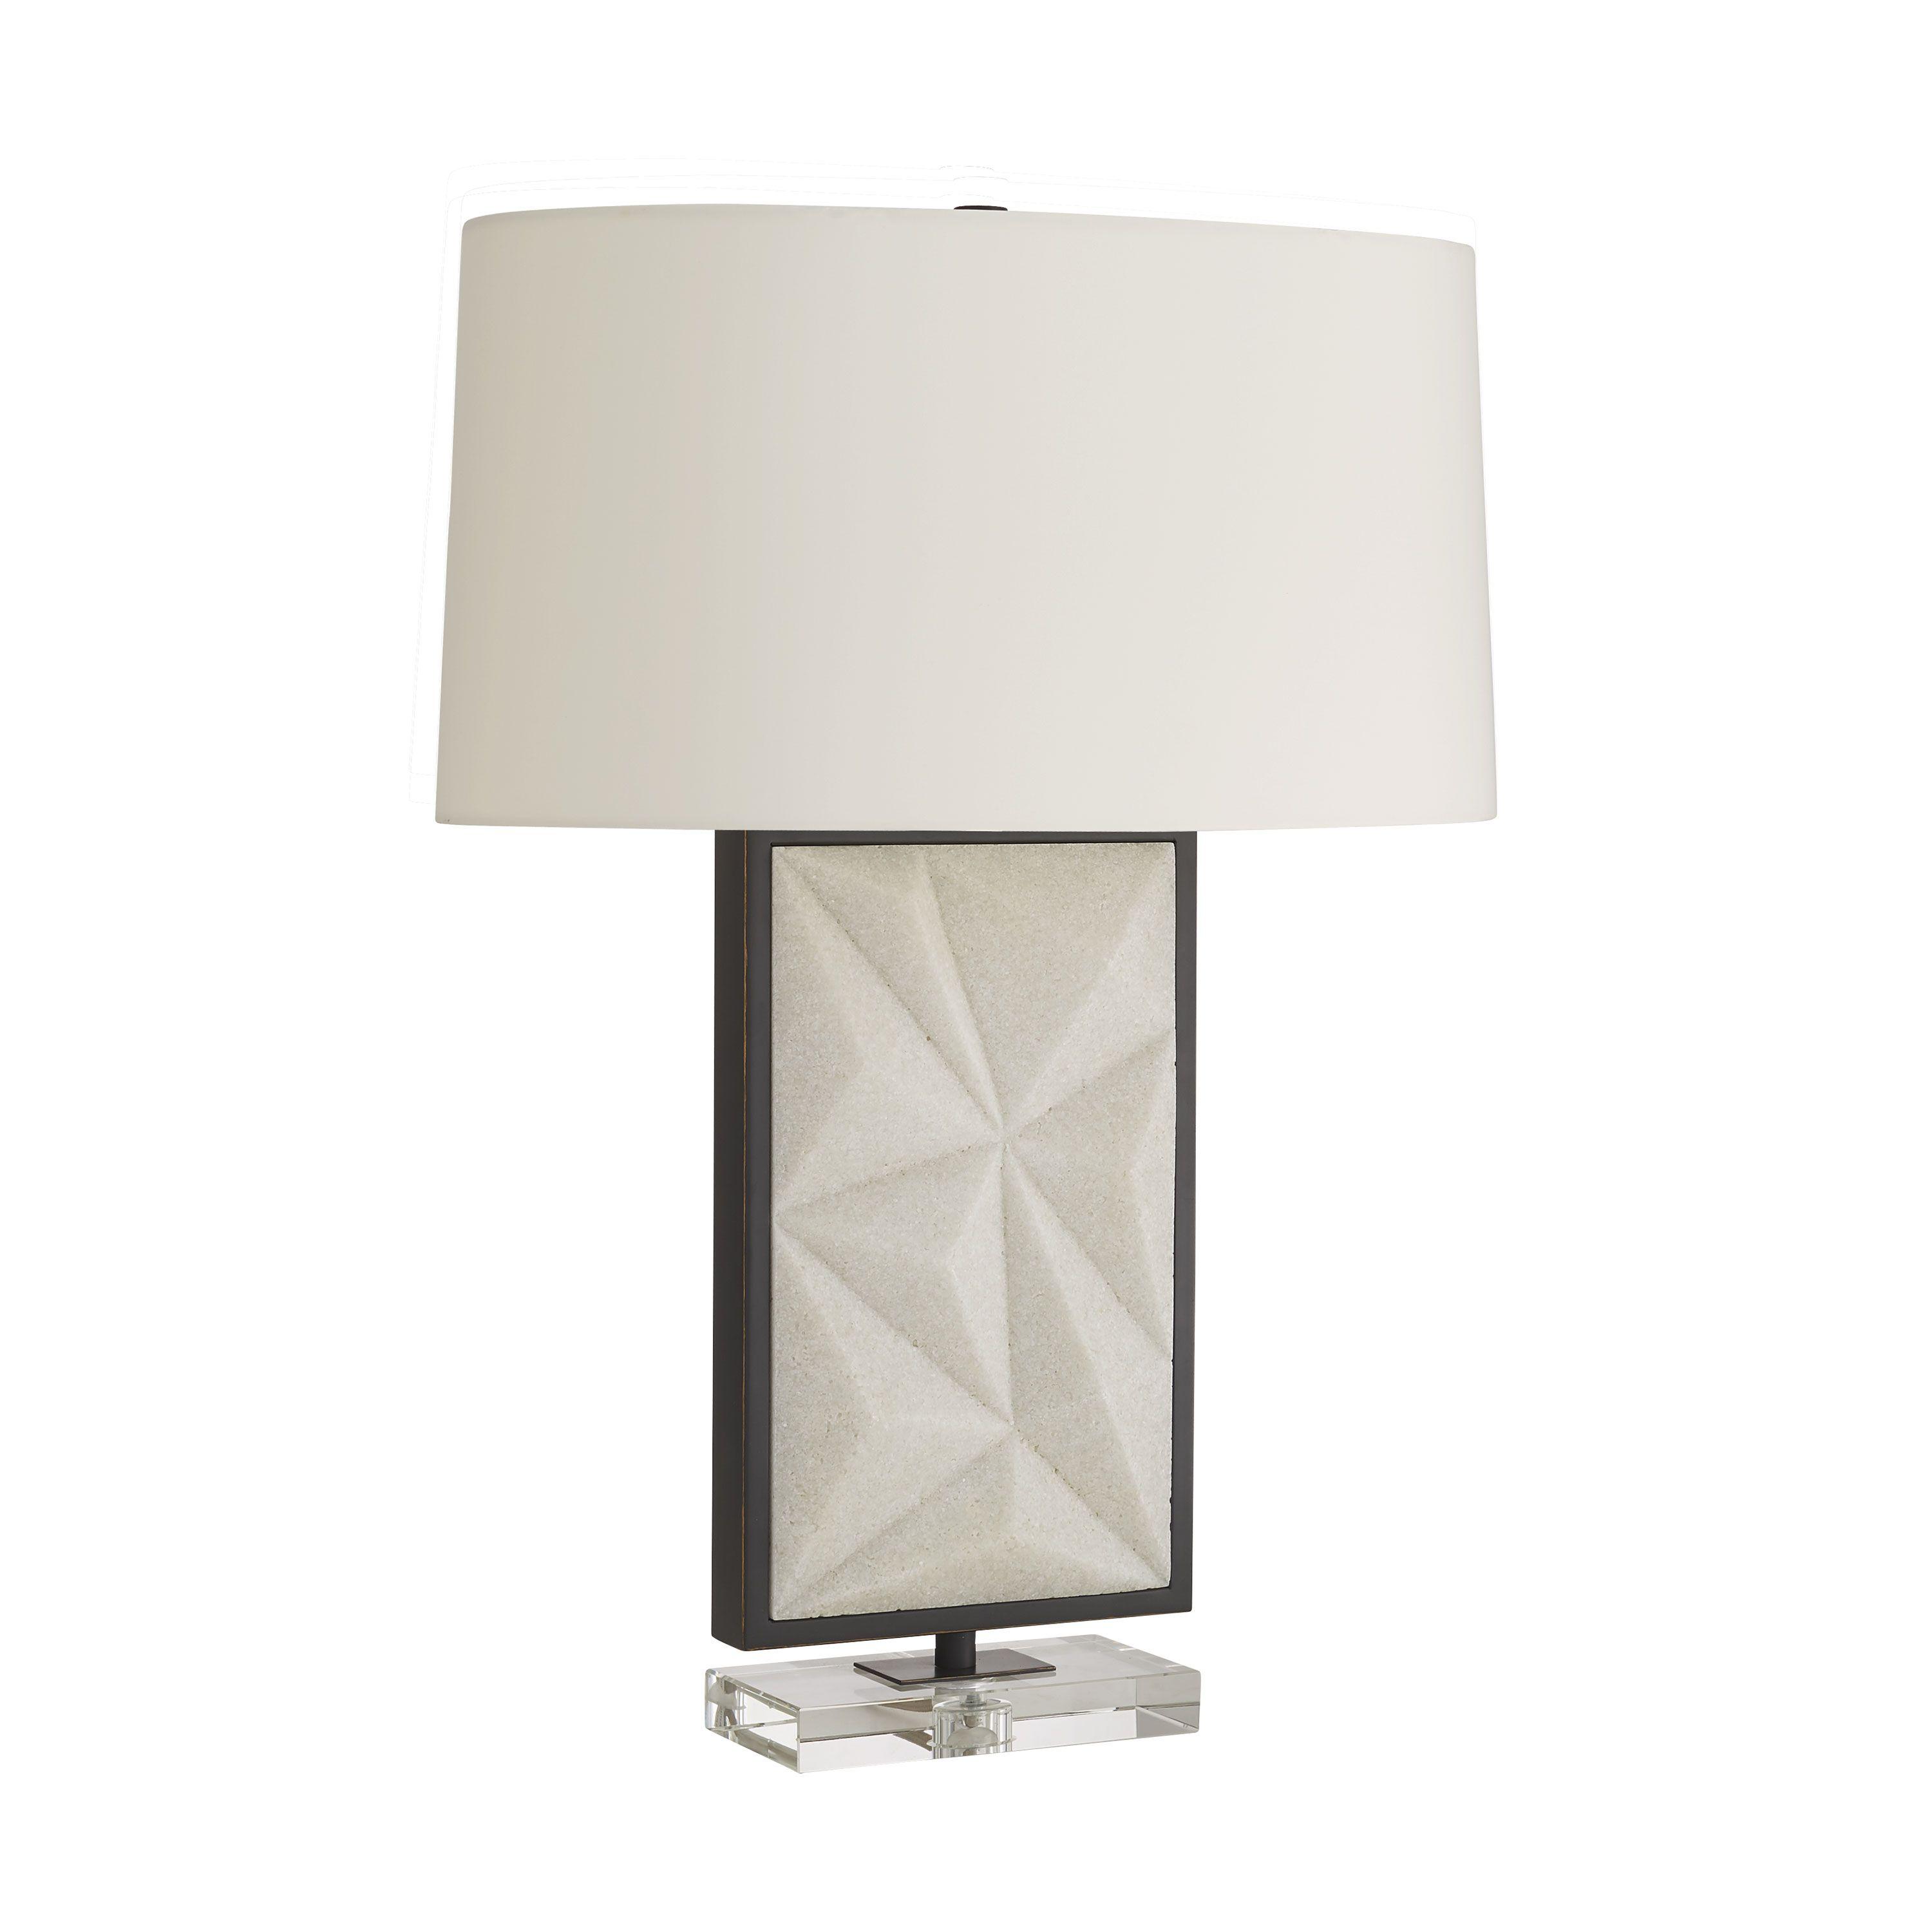 Купить Настольная лампа Delta Lamp в интернет-магазине roooms.ru